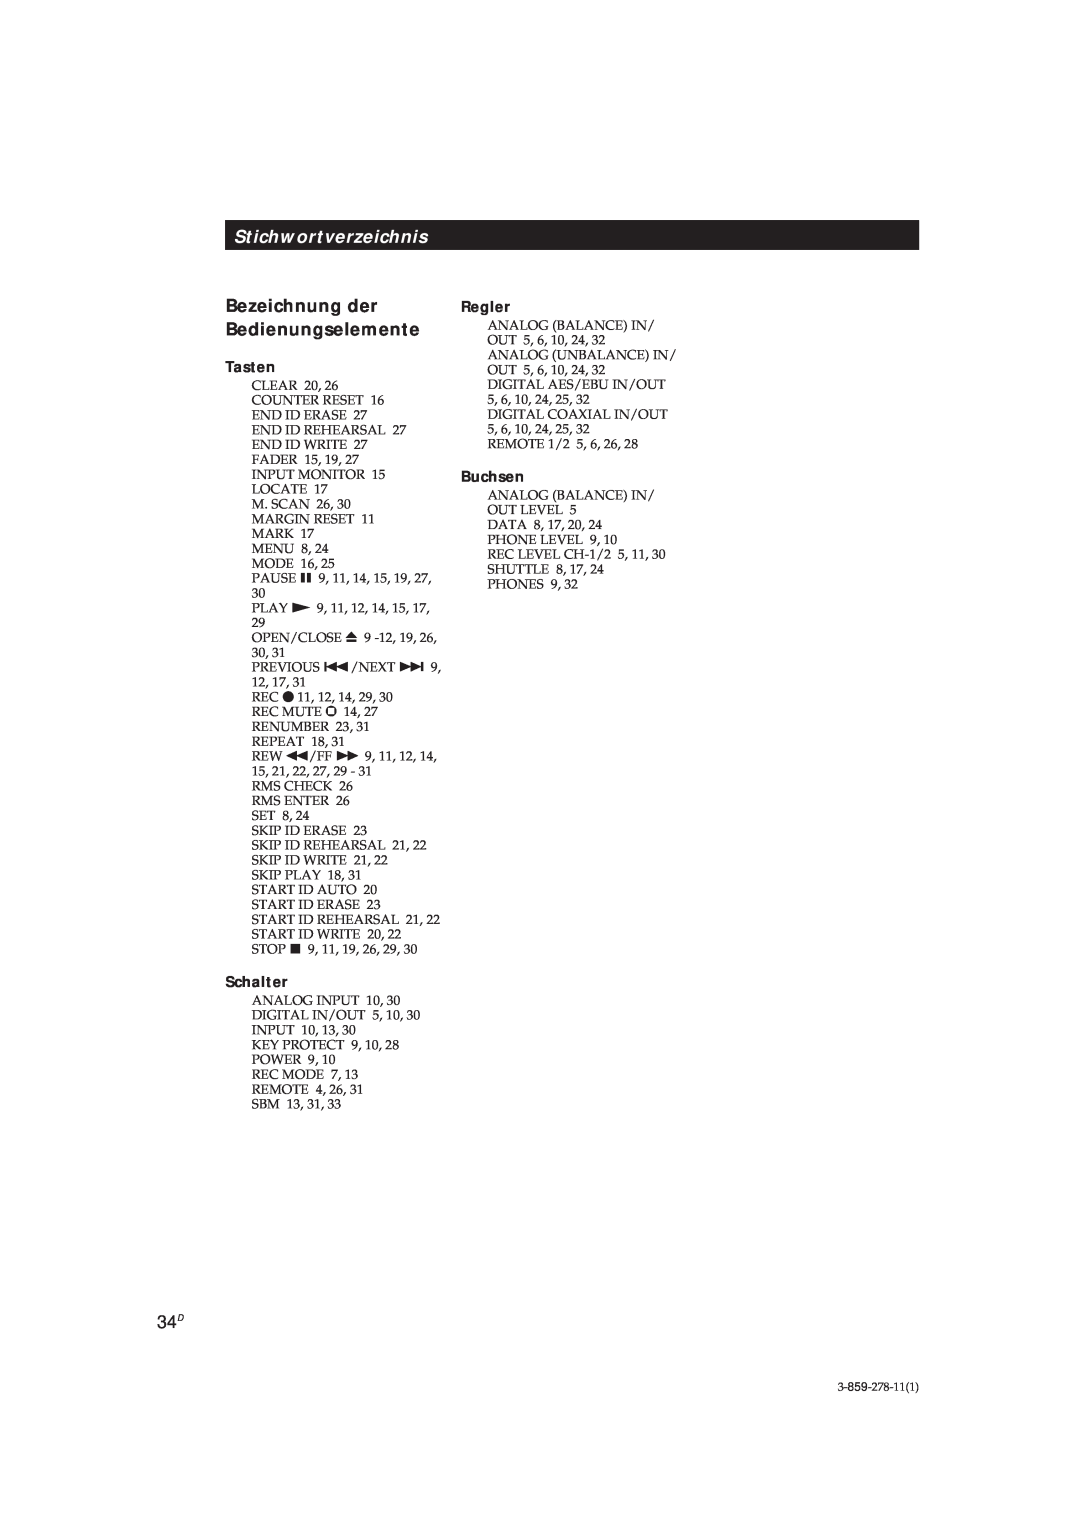 Sony PCM-R500, PCM-R700 manual Stichwortverzeichnis, Bezeichnung der Bedienungselemente 